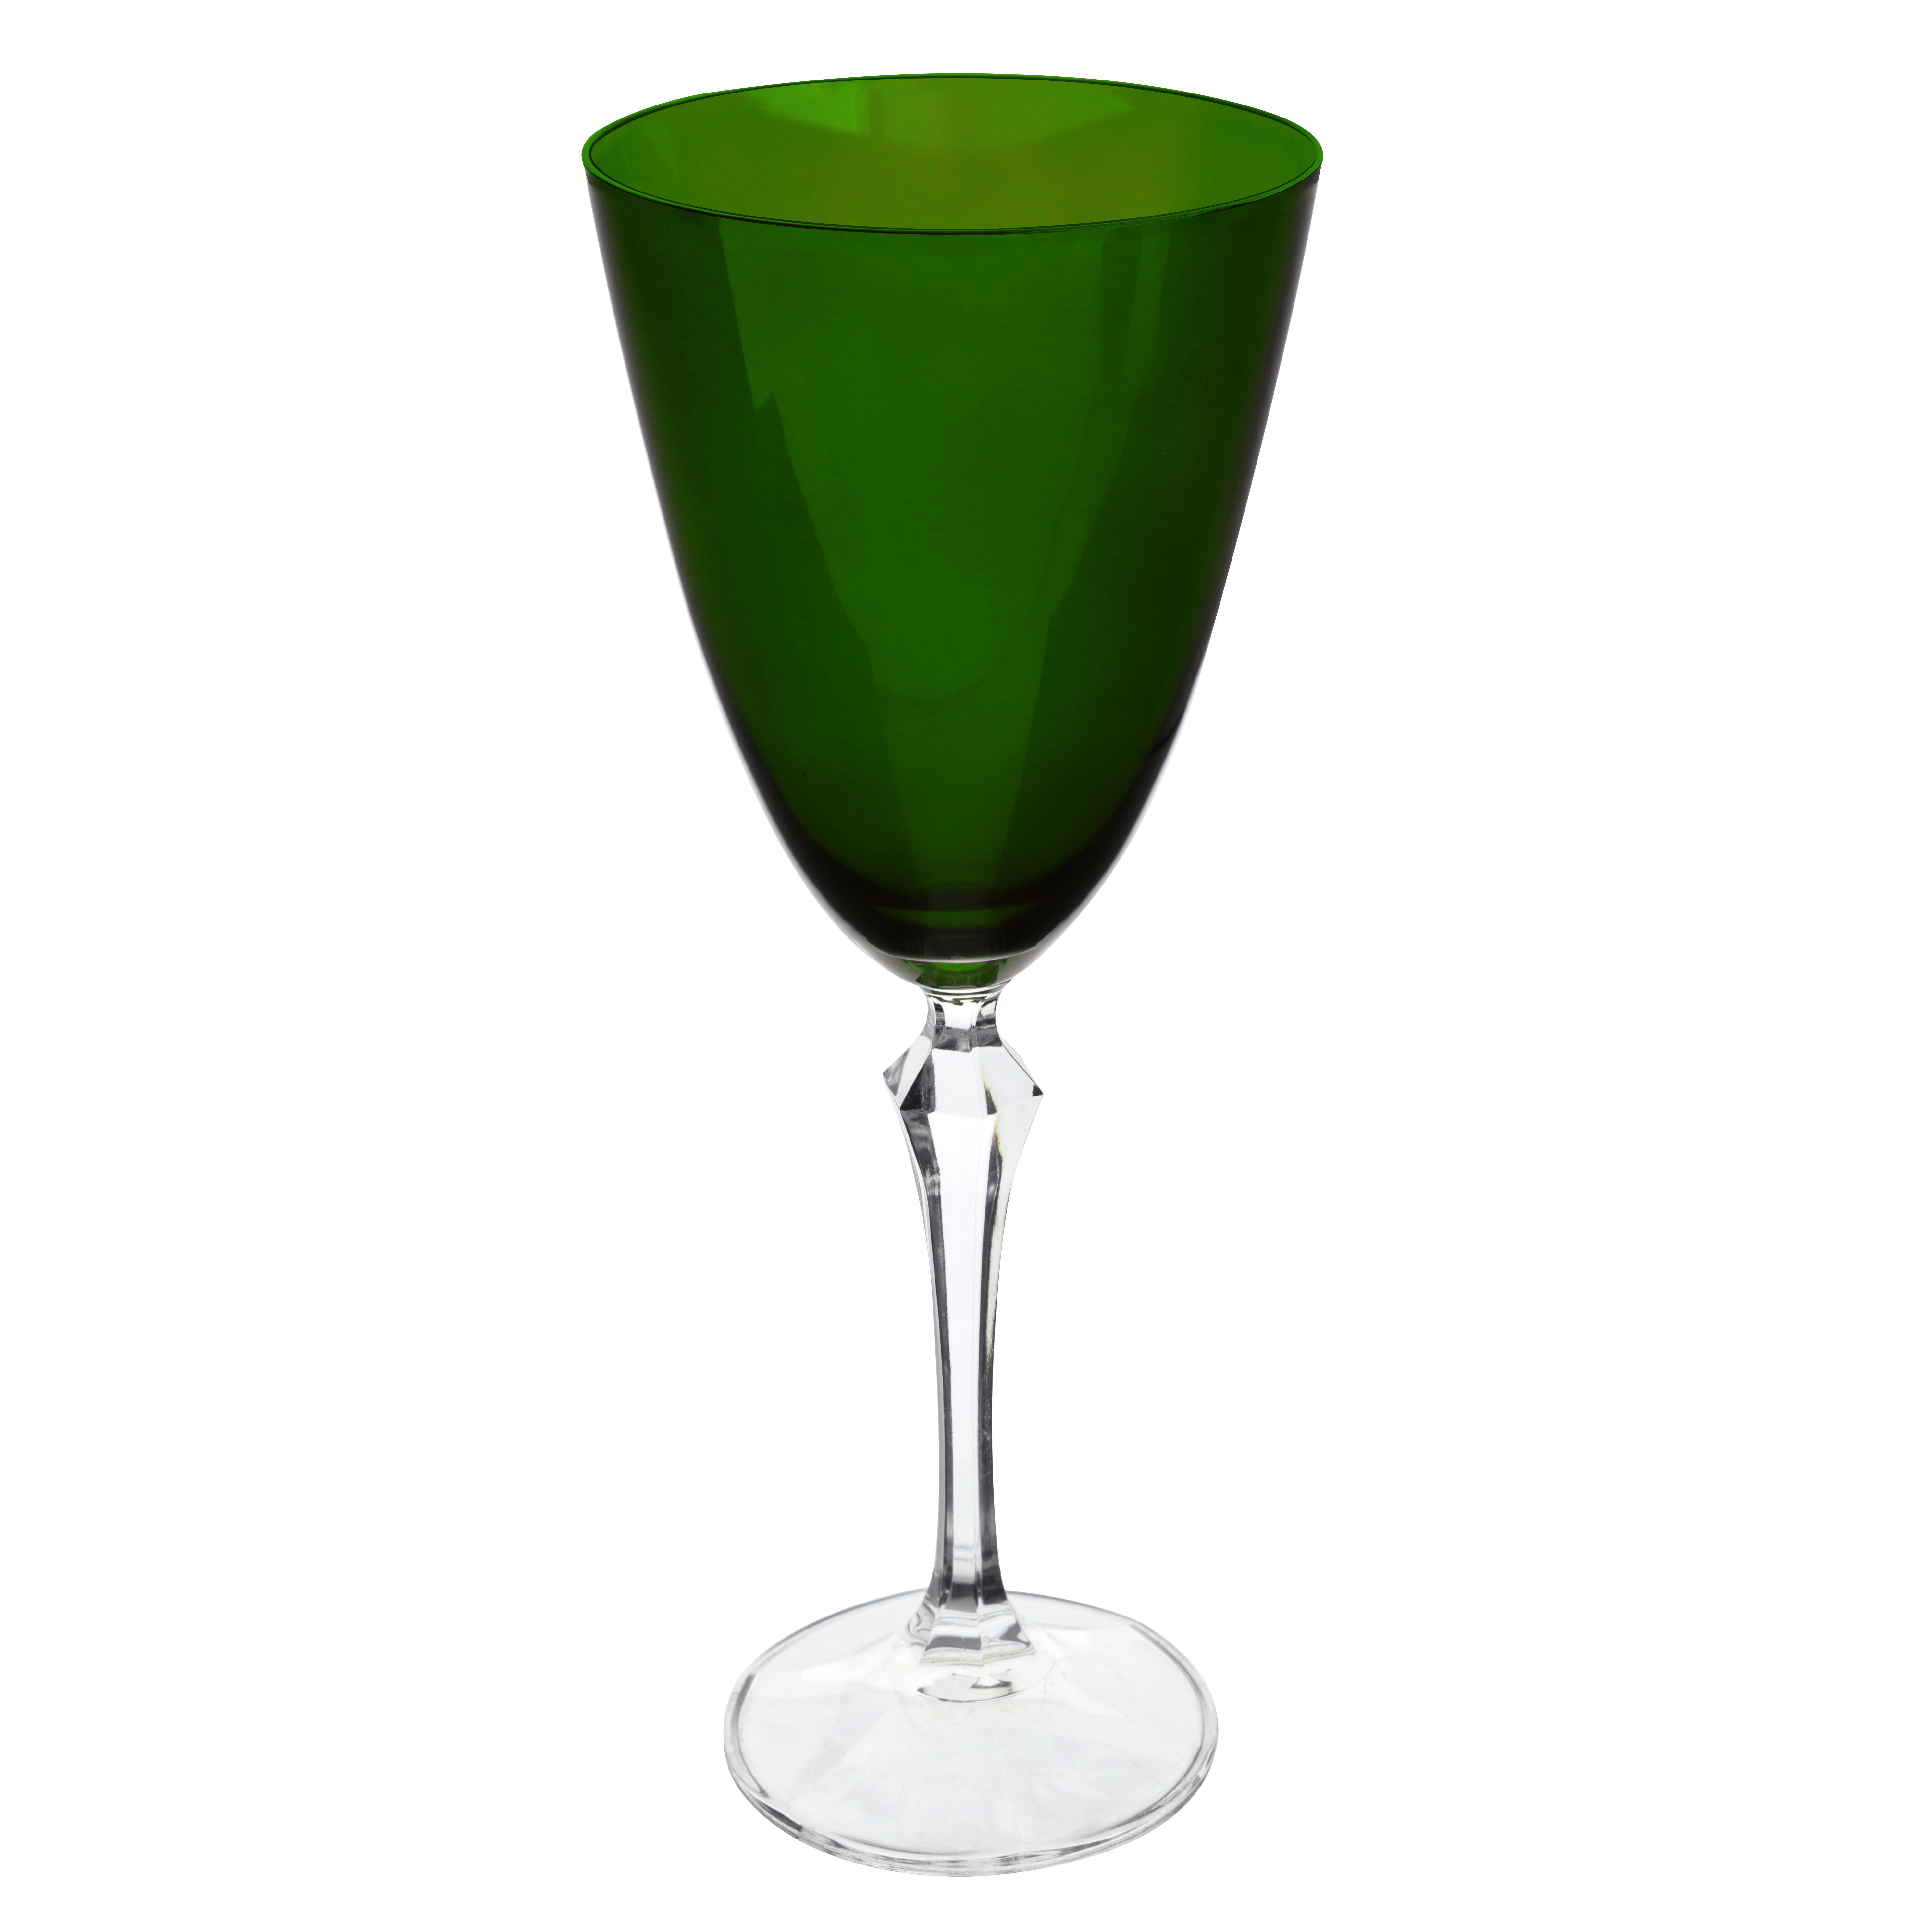 Jogo de 6 tacas para champanhe Elizabeth em cristal ecologico 200ml A25cm cor verde